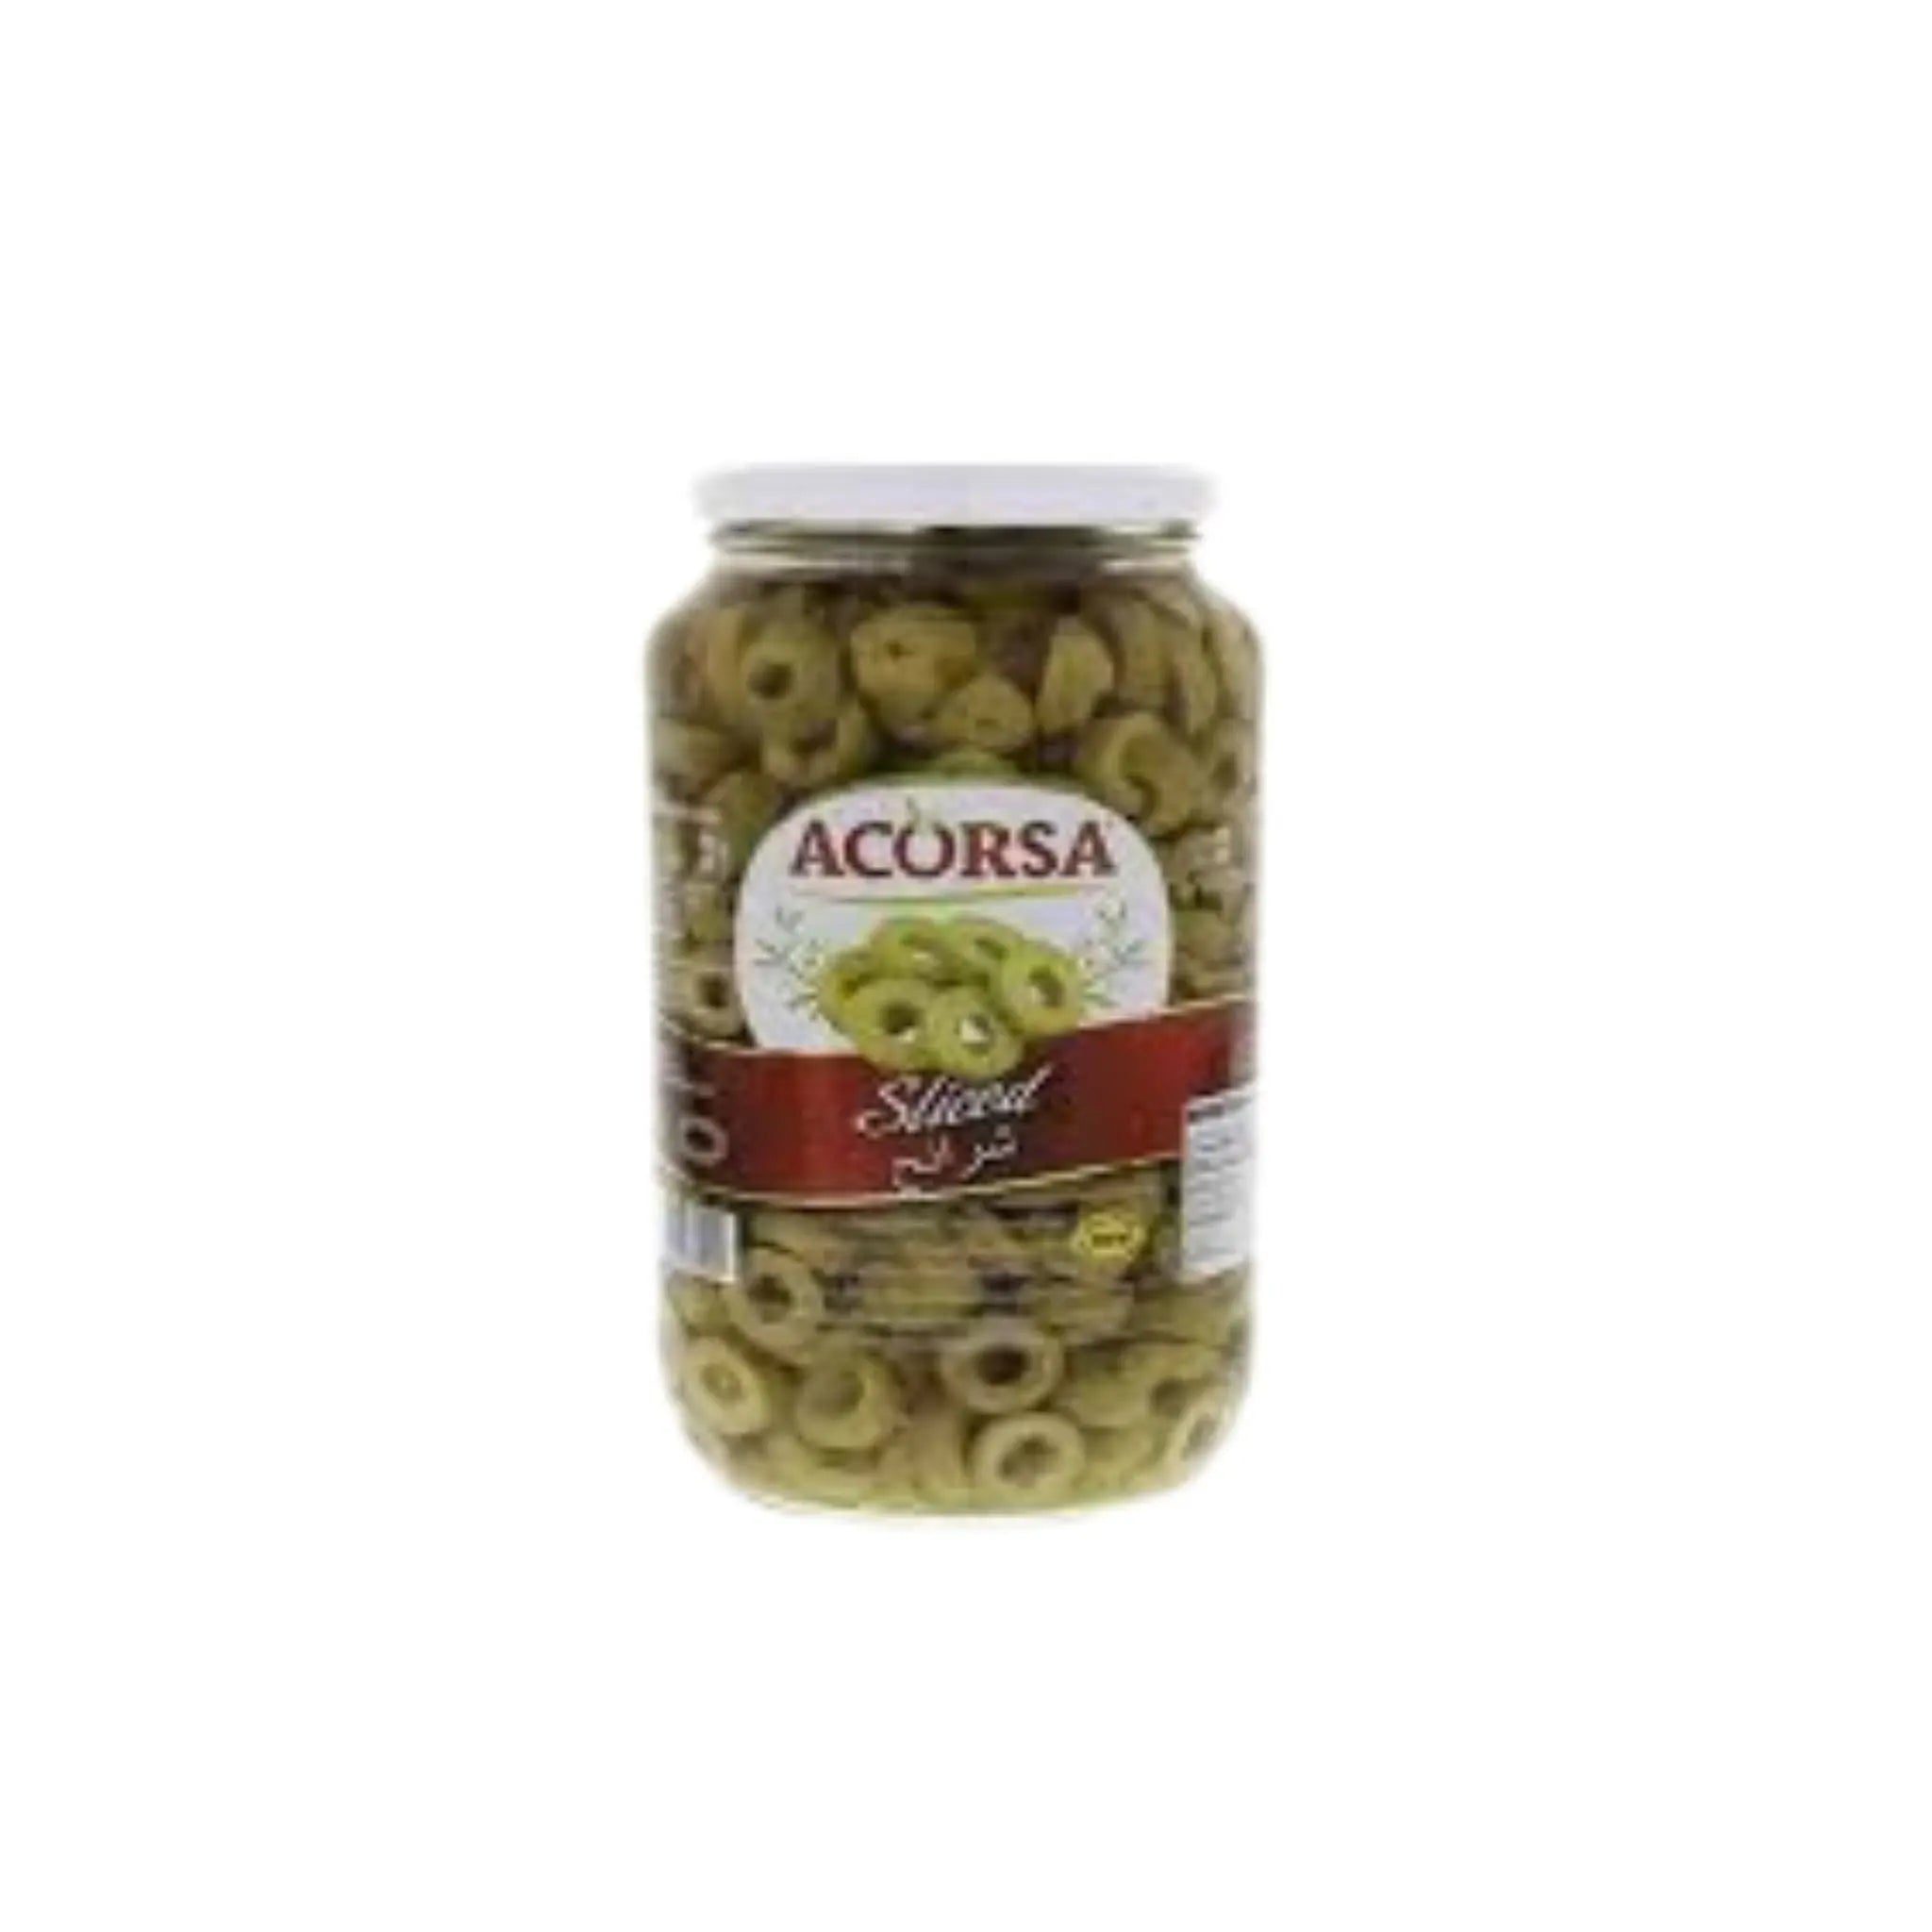 Acorsa Sliced Green Olives - 6x450g (1 carton) Marino.AE